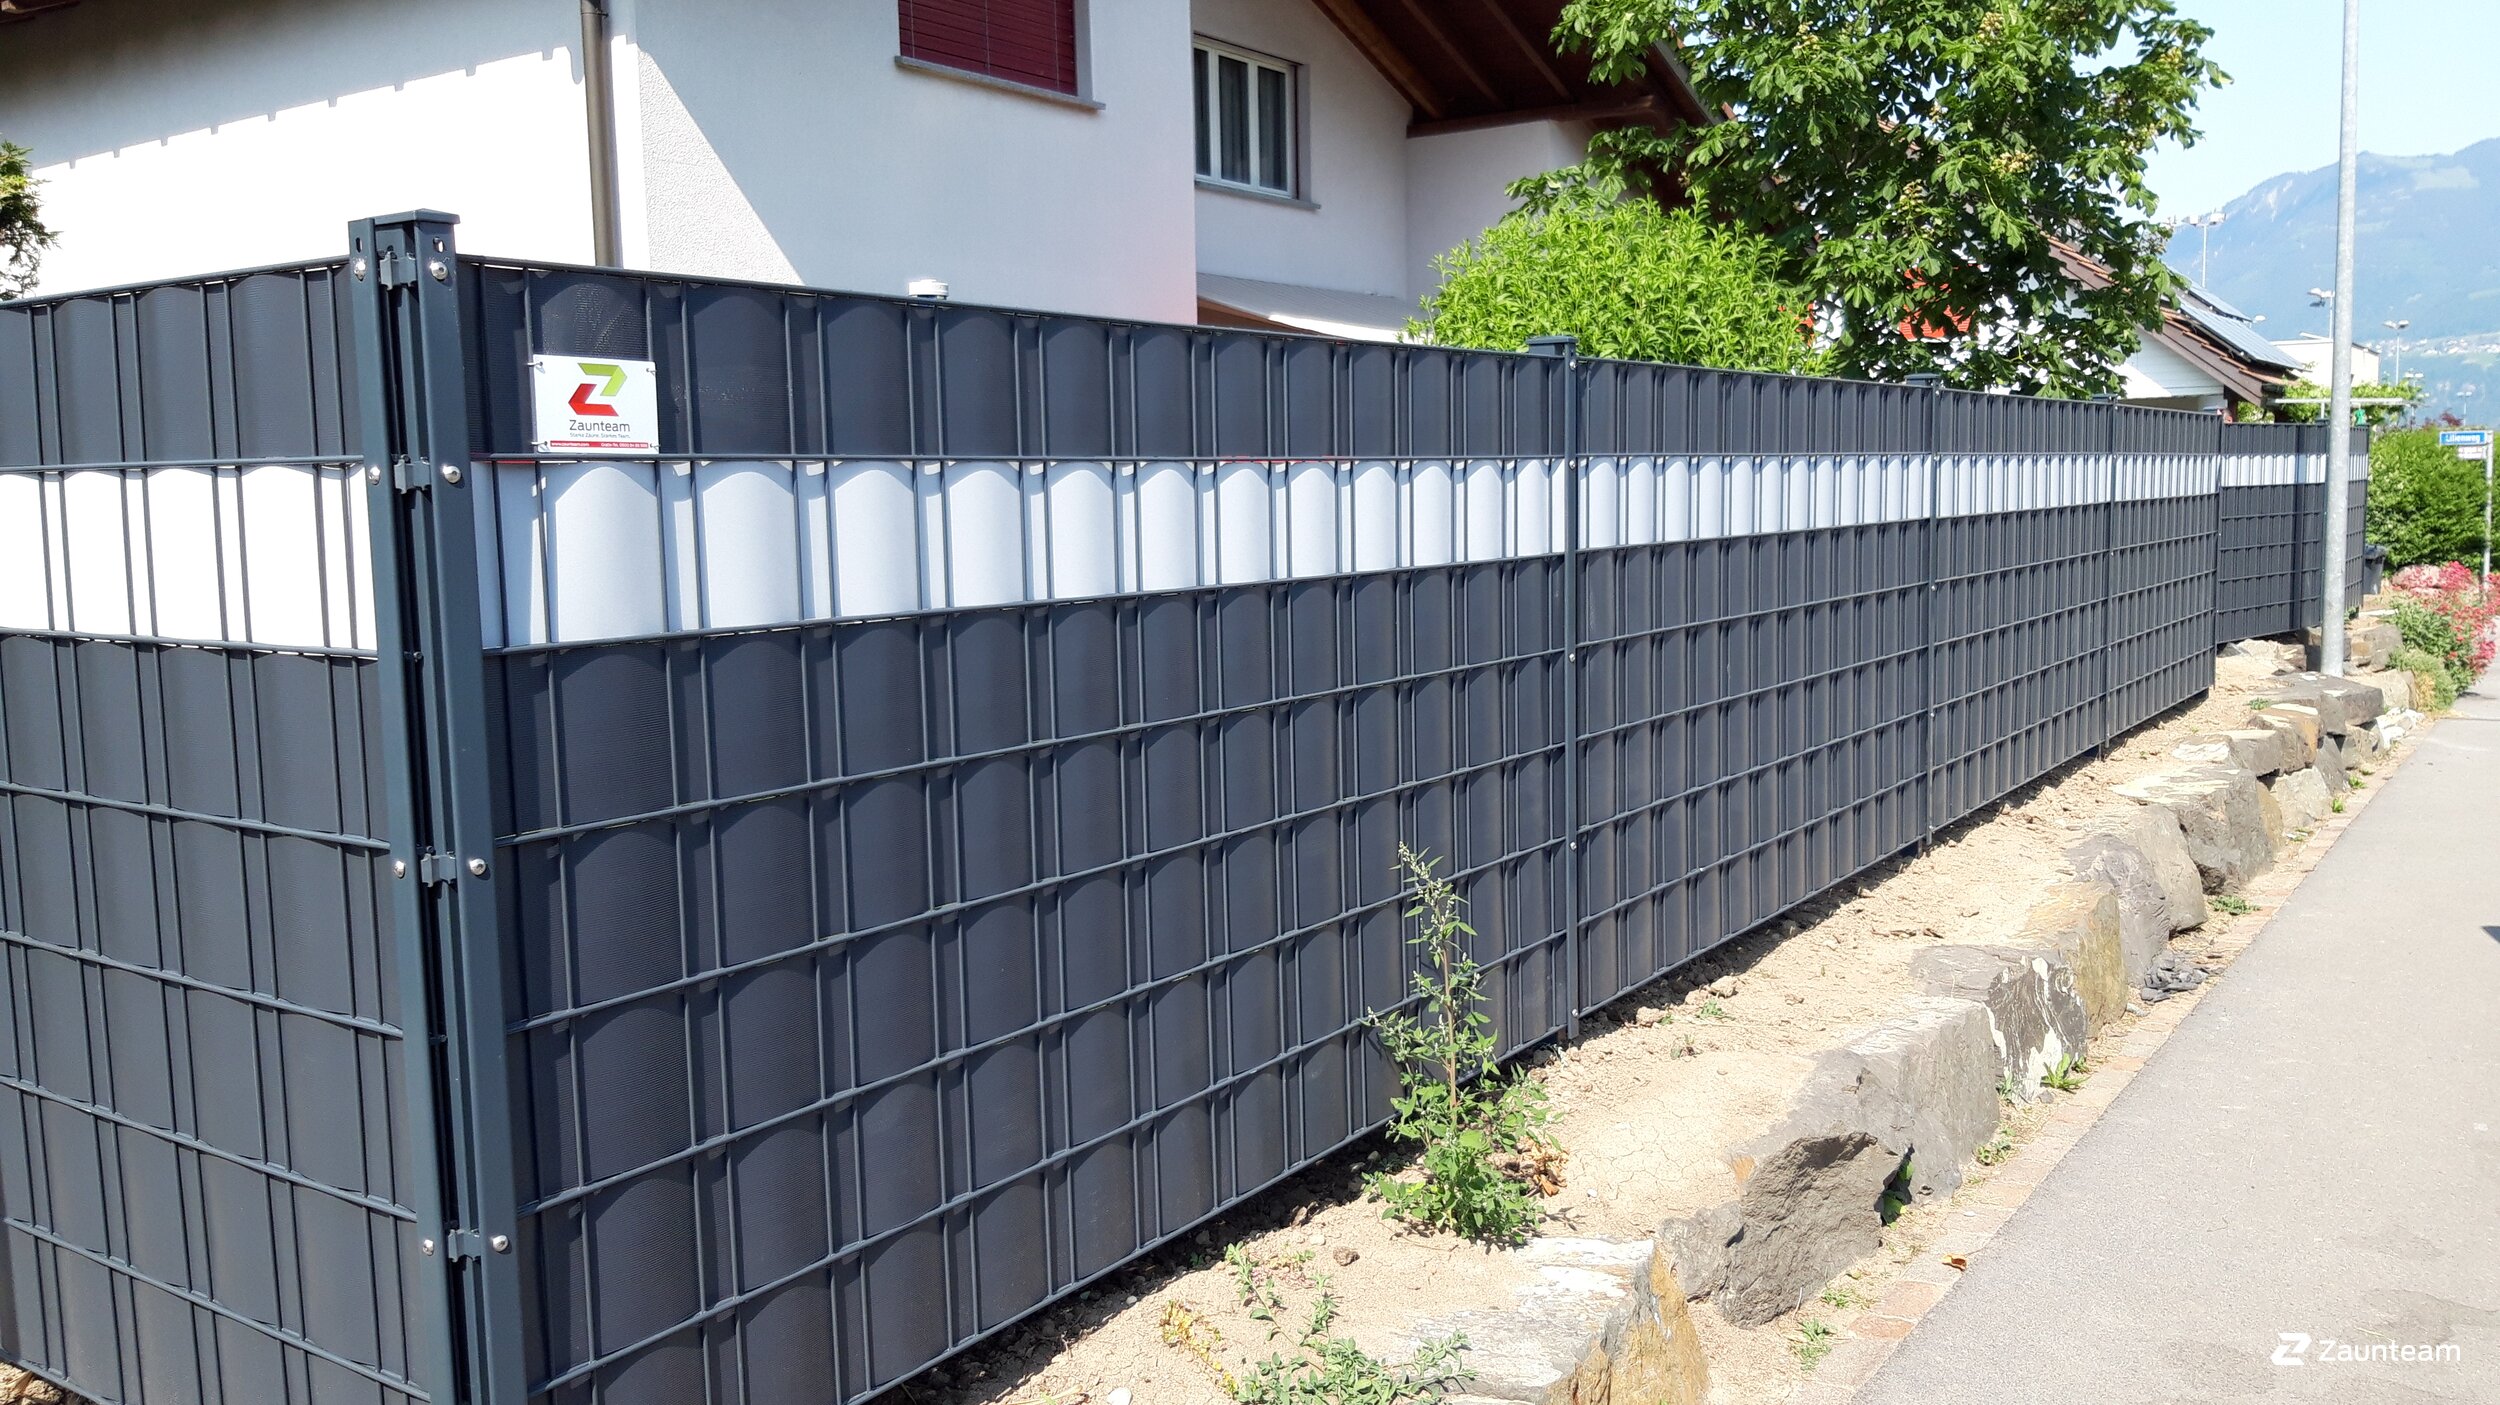 ILESTO PVC Sichtschutzstreifen für Zäune 35m RAL 7016 Anthrazit Sichtschutz für Ihren Gartenzaun 